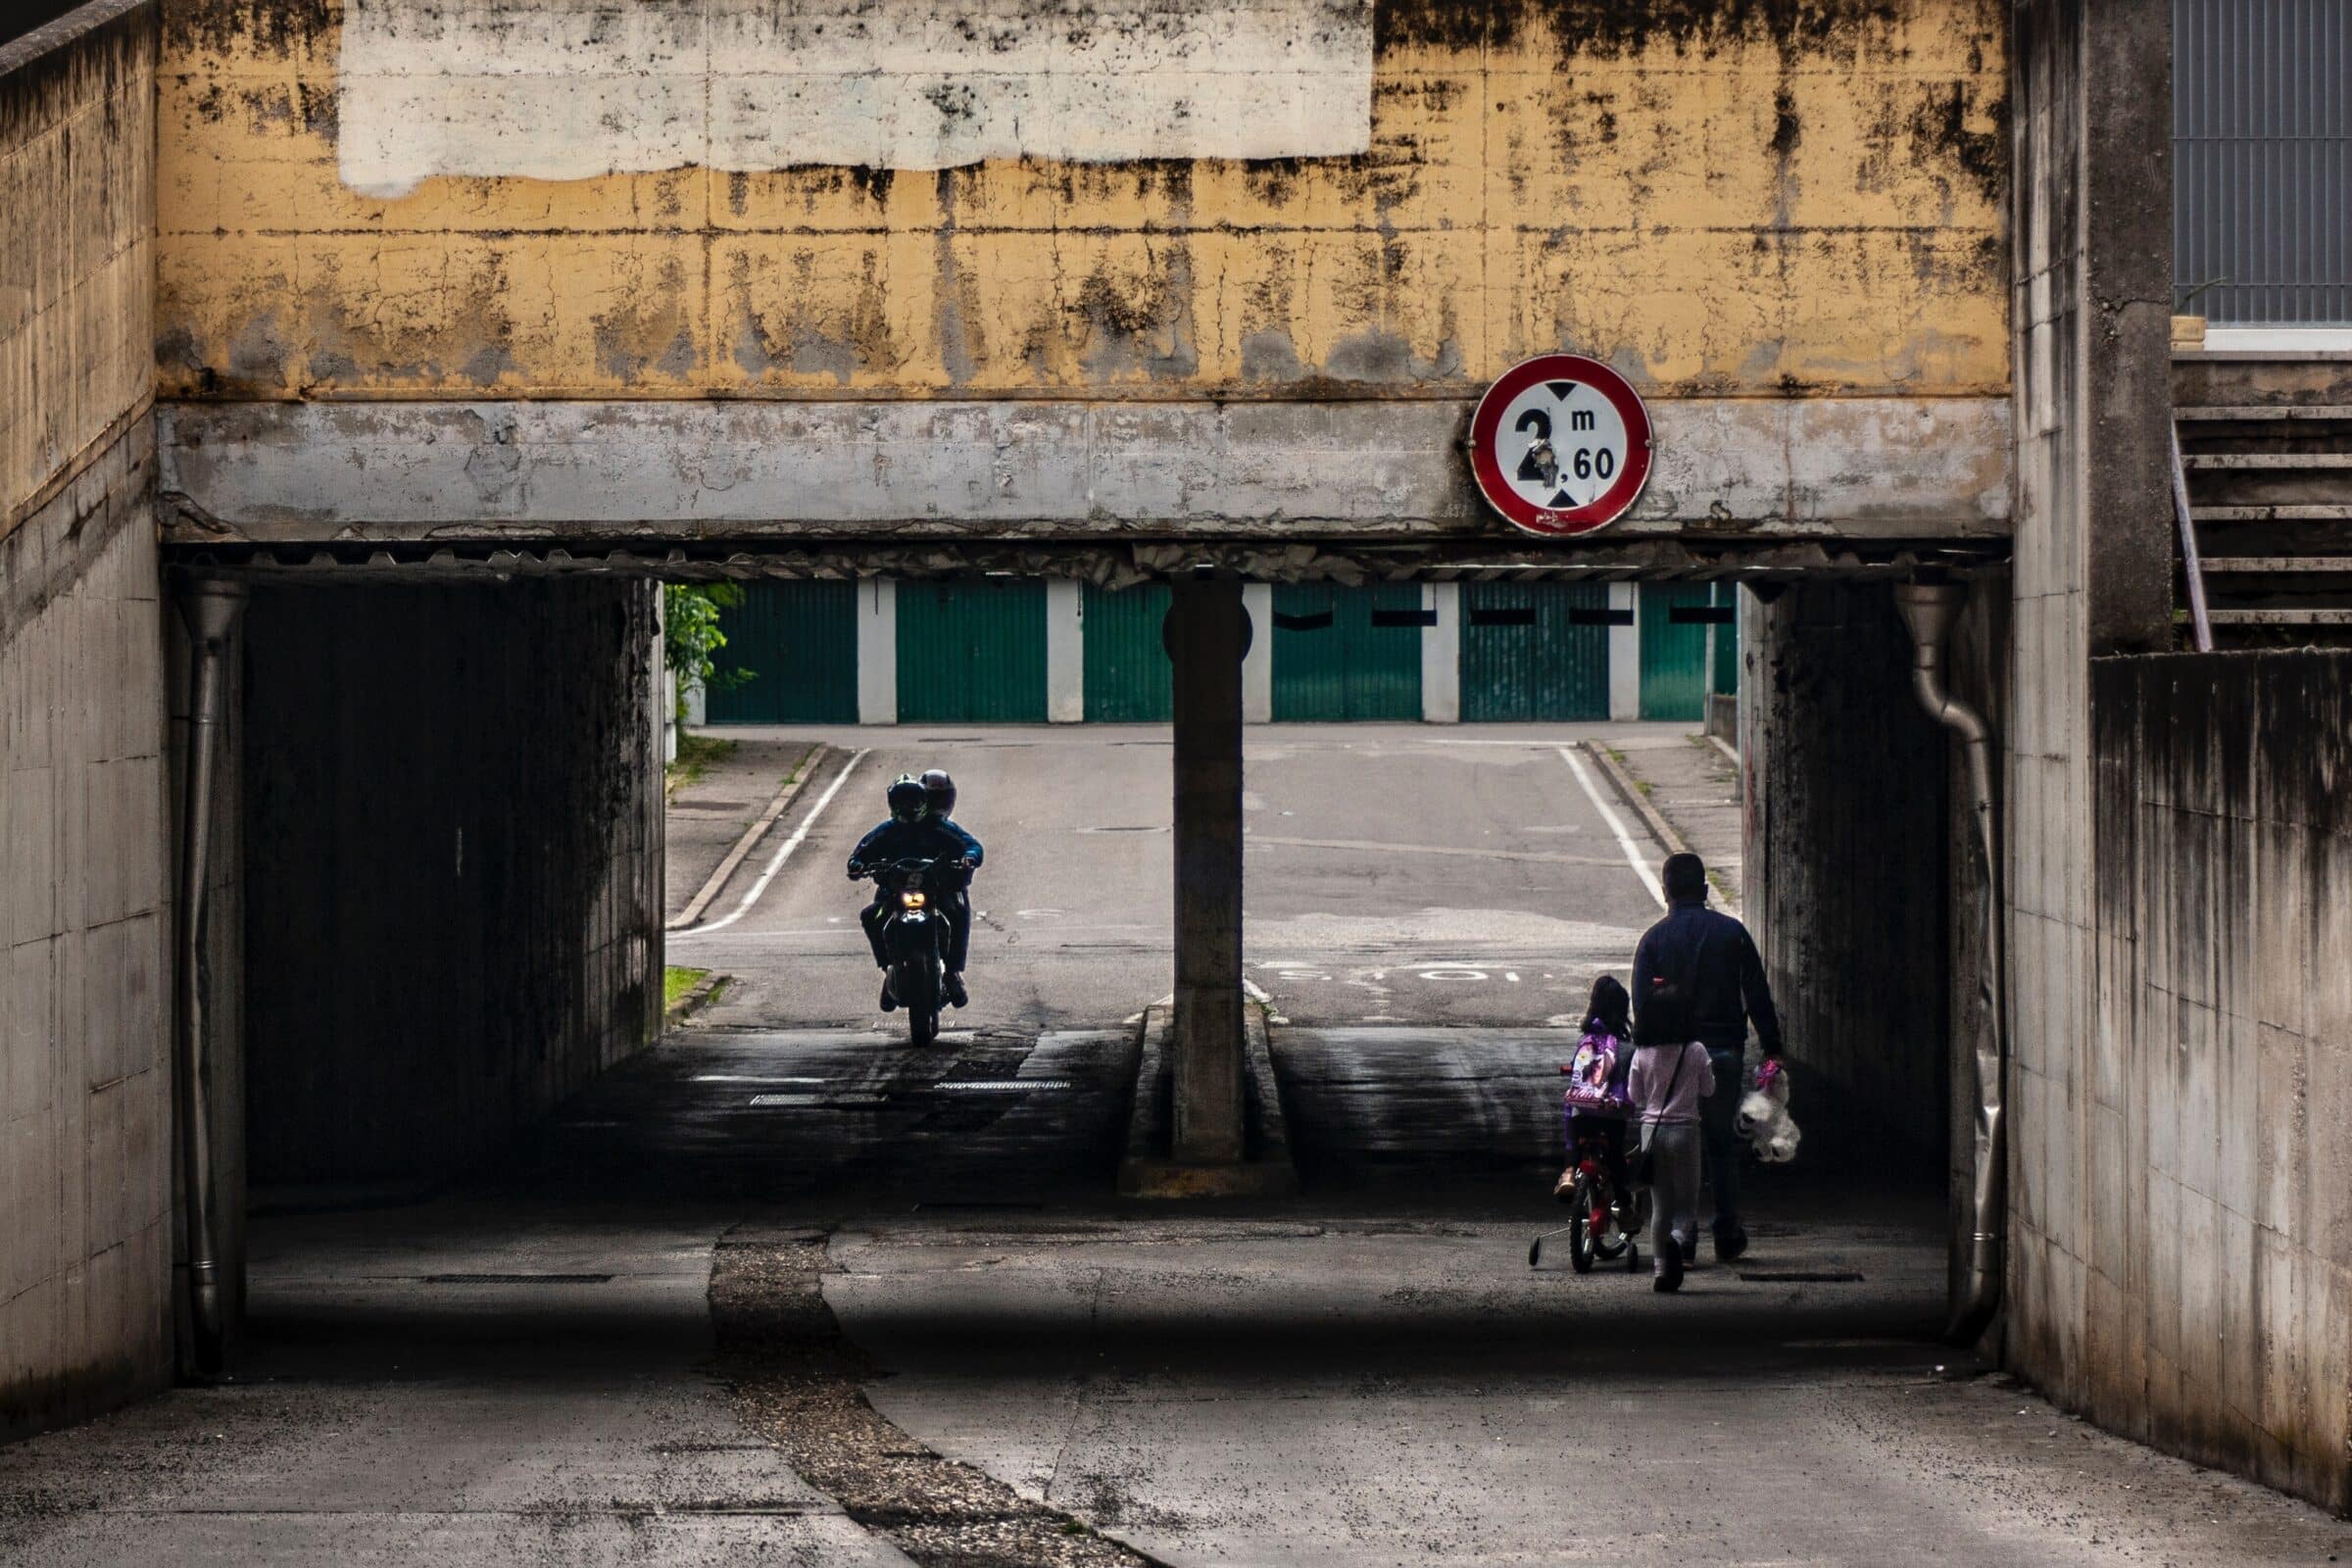 Smantella il motociclo sequestrato: denunciato giovane con guida pericolosa vicina a una scuola